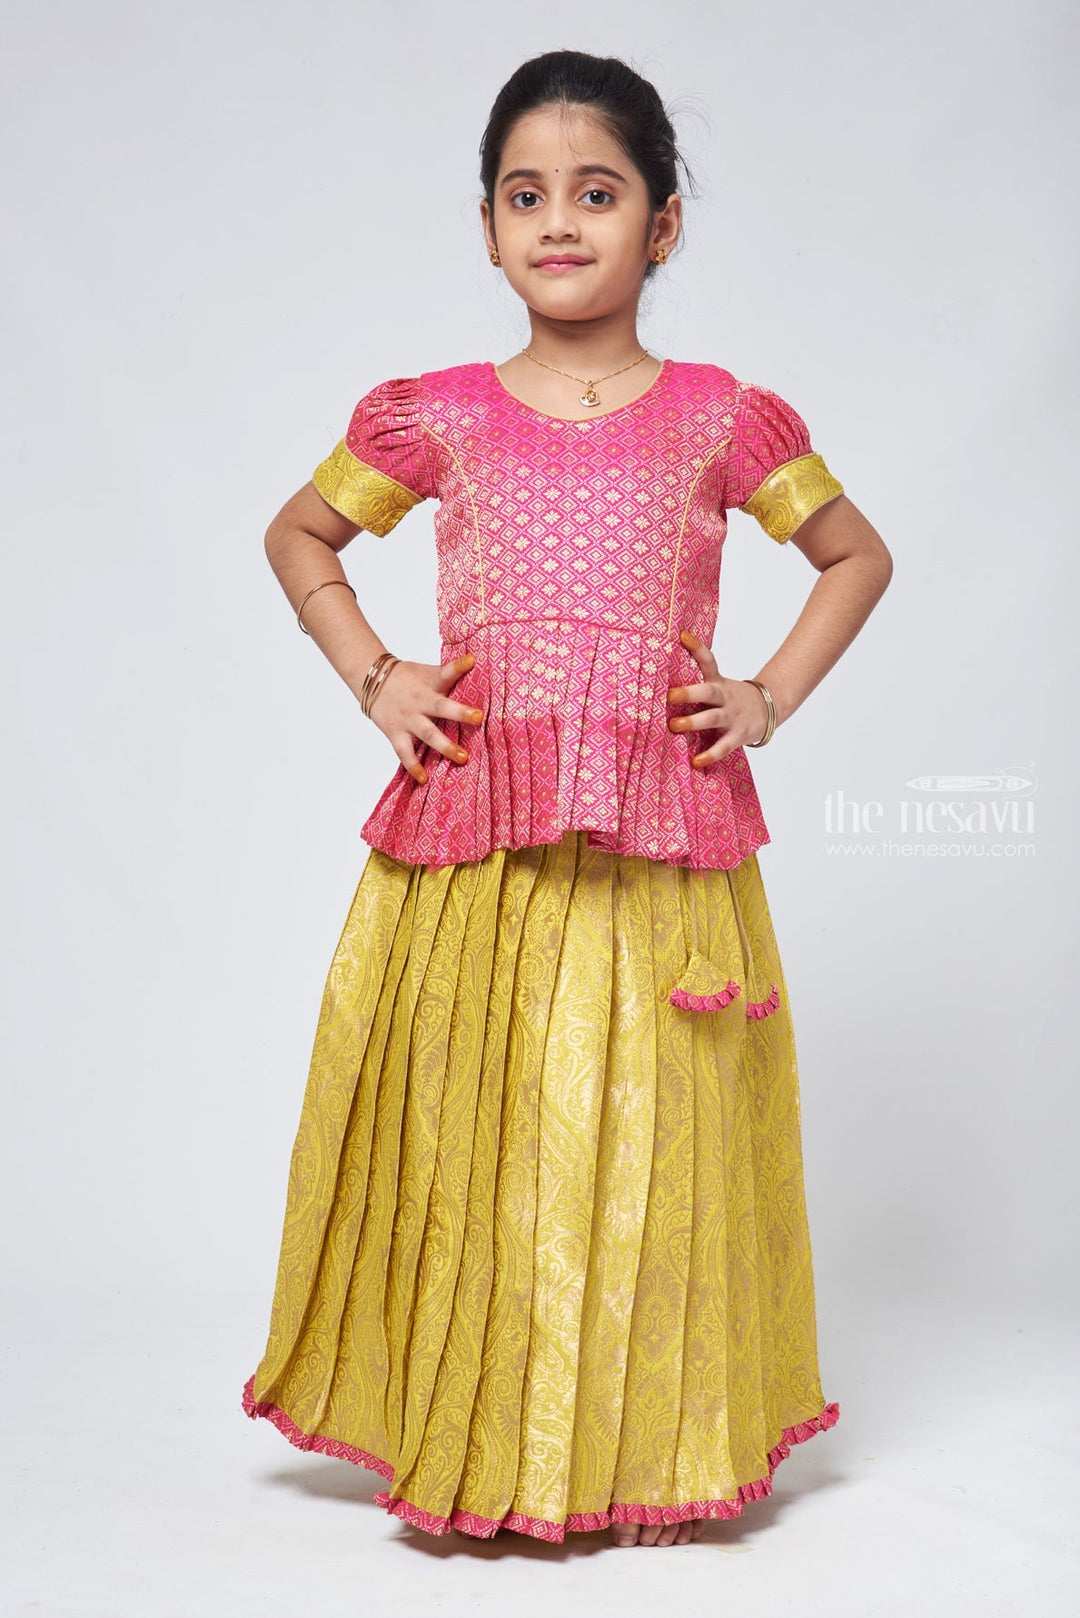 The Nesavu Pattu Pavadai Stylish Brocade Pink Peplum Blouse and Banarasi Green Pattu Pavadai: Perfect for Celebrations Nesavu 14 (6M) / Green GPP302A-14 Pattu Pavadai Latest Design | Pattu Pavadai for baby girl online | The Nesavu